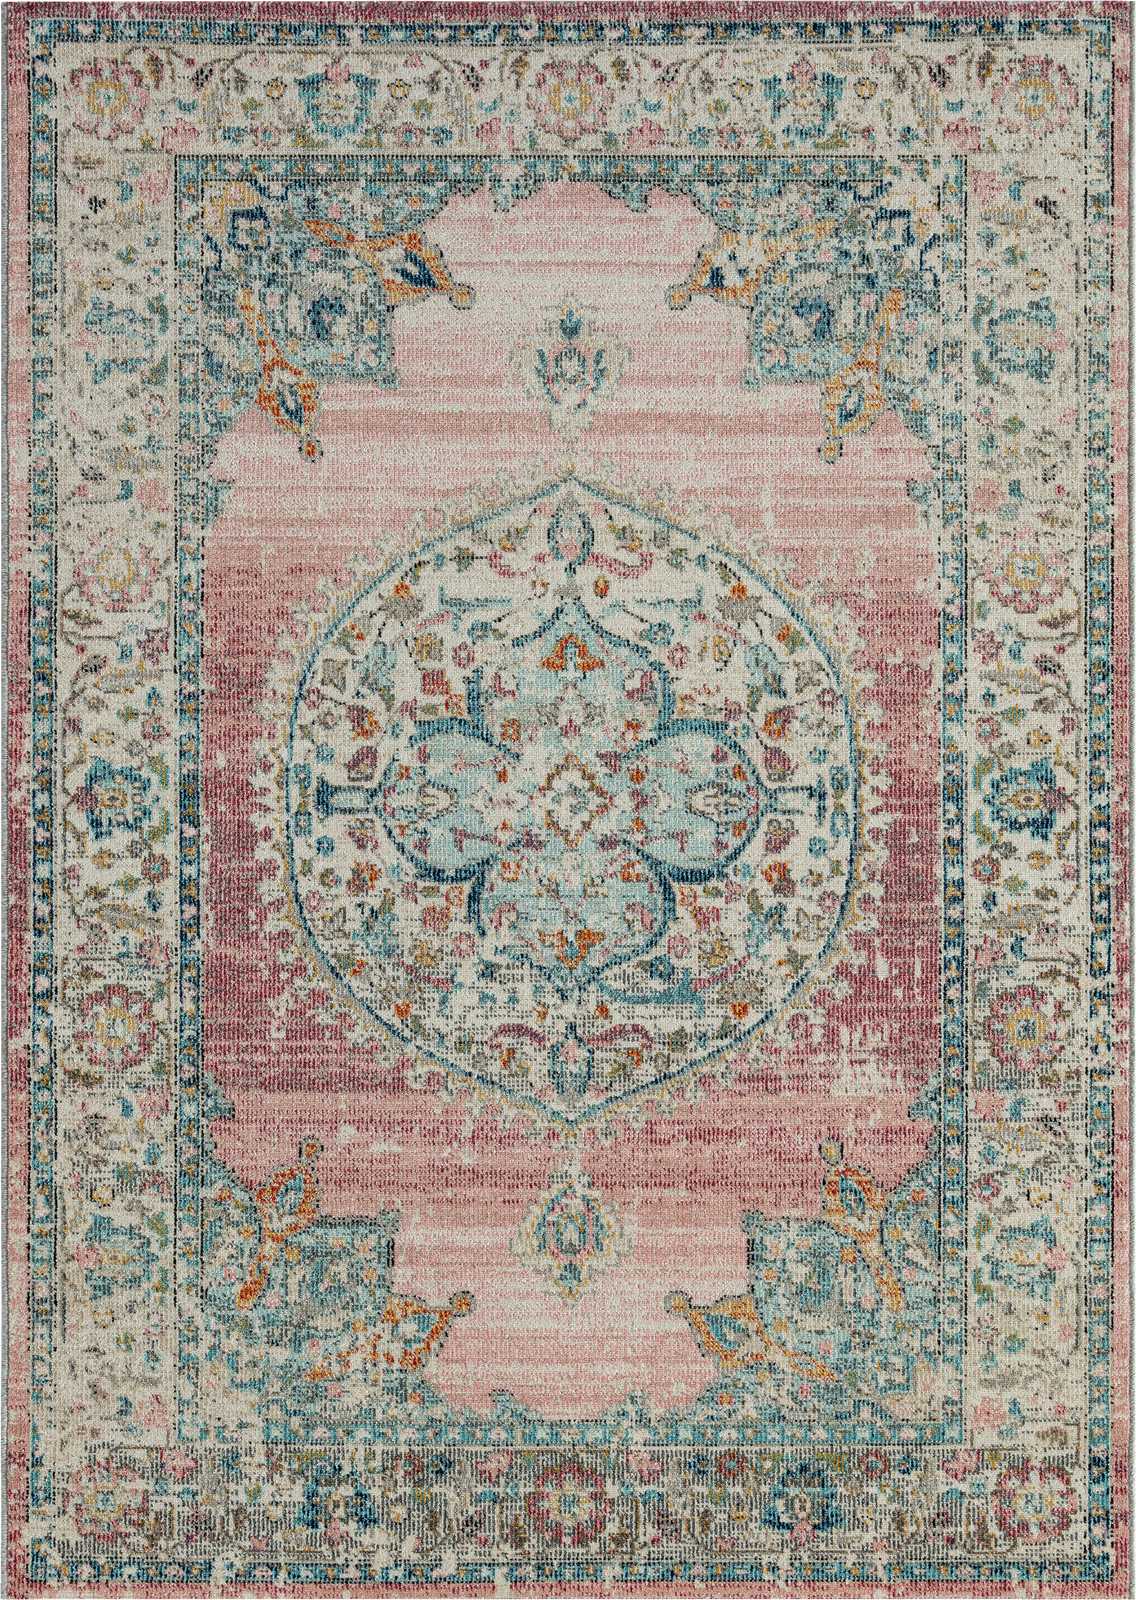             Outdoor Teppich aus Flachgewebe mit Pinken Akzenten – 290 x 200 cm
        